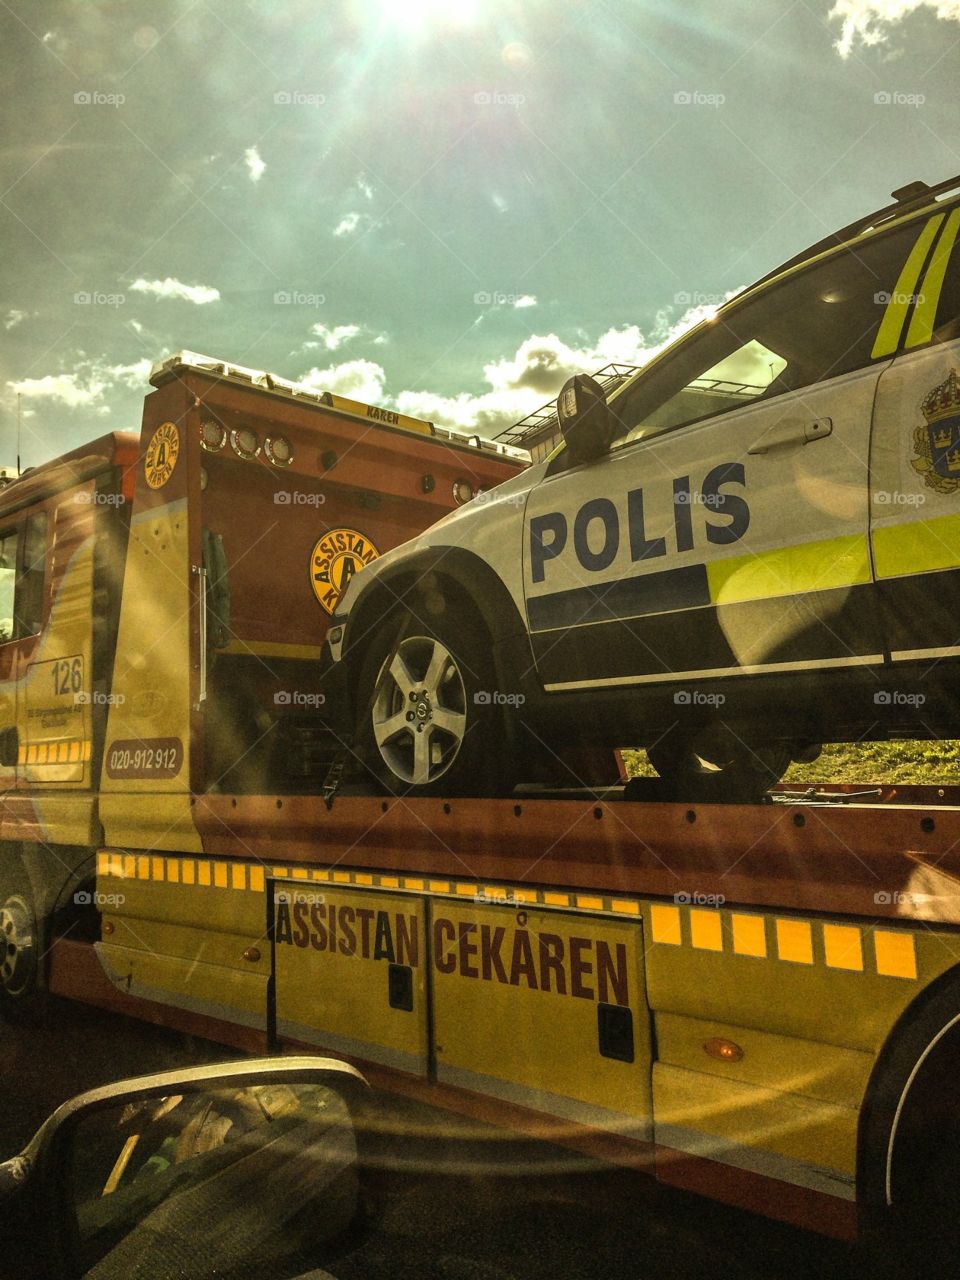 #policecar #polisbil #accident #stockholm #swedishpolice #stockholmcounty #brokencar 
